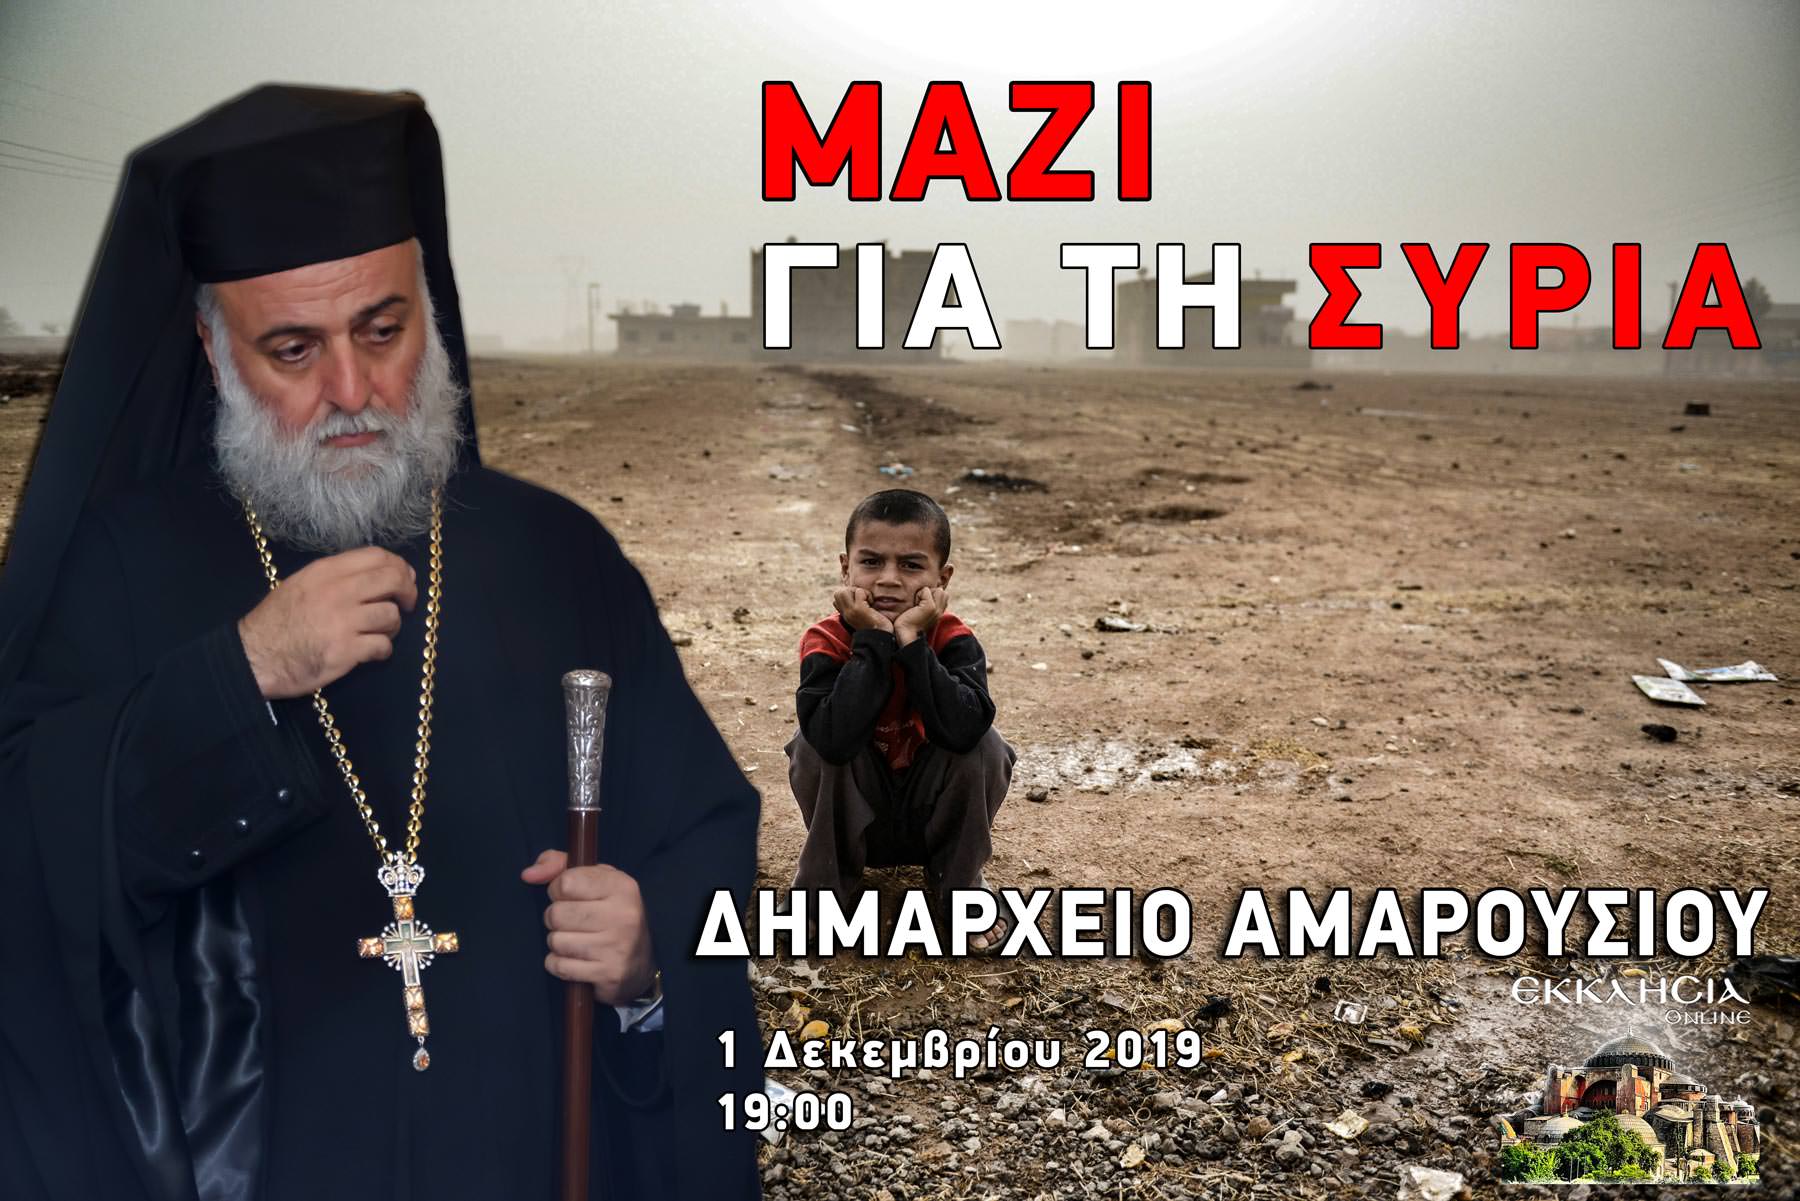 Αντώνιος Μαλούφ μαζί για τη συρία